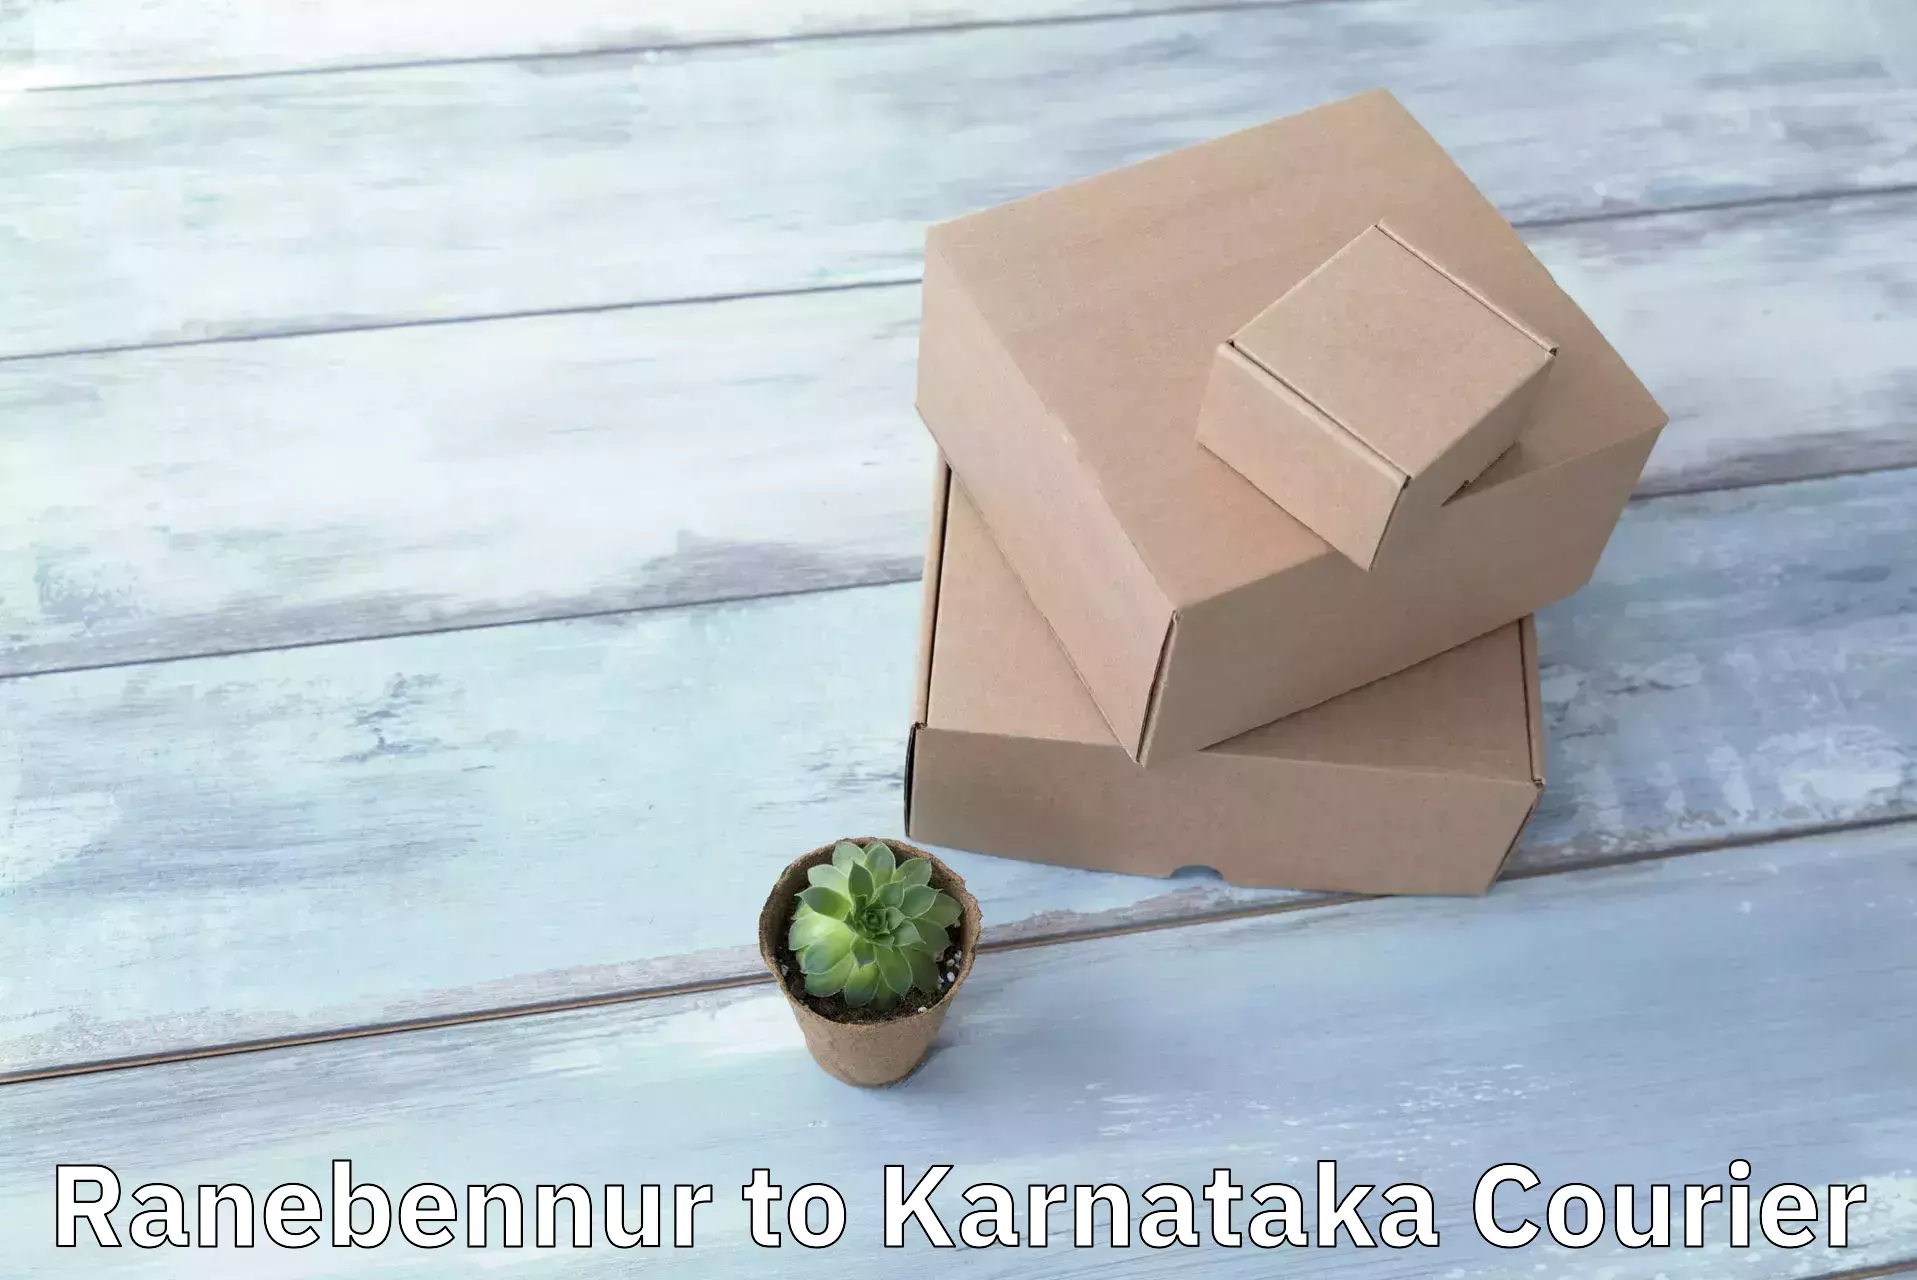 Nationwide delivery network Ranebennur to Karnataka